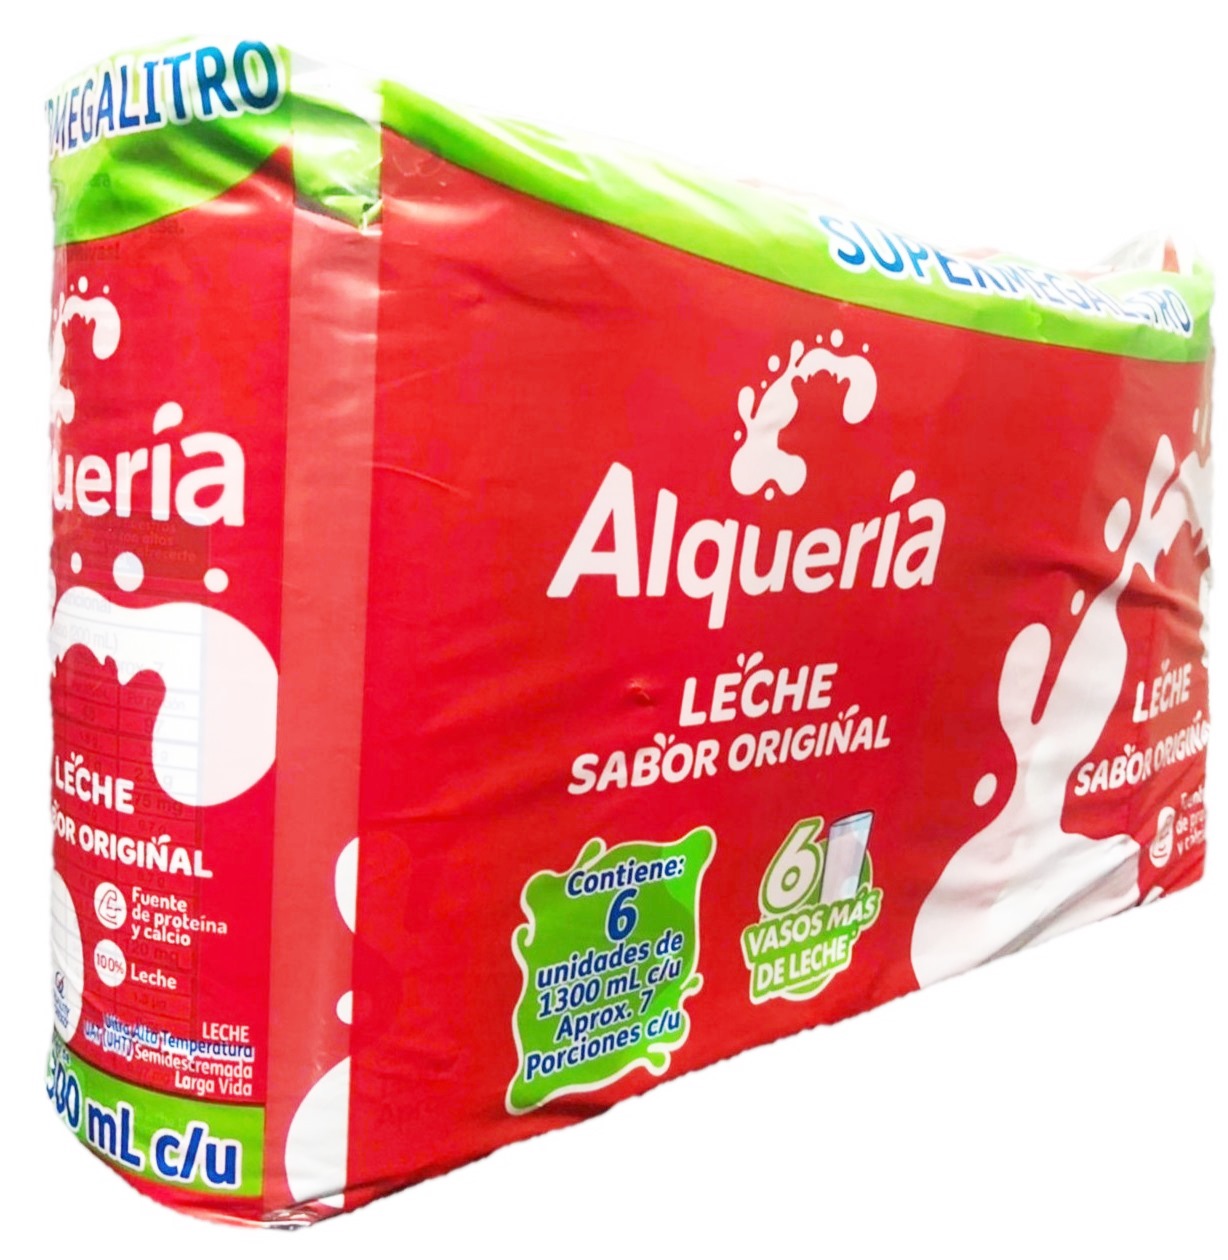 Leche Alquería 6 x 1300 ml supermegalitro sabor original